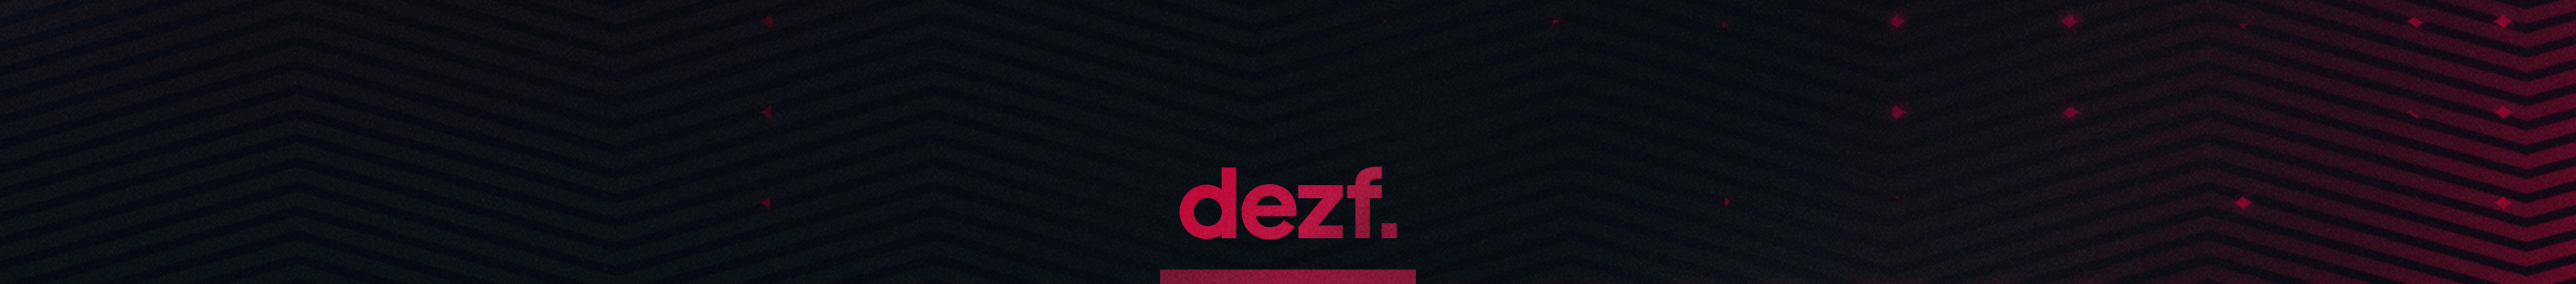 DEZF ART's profile banner